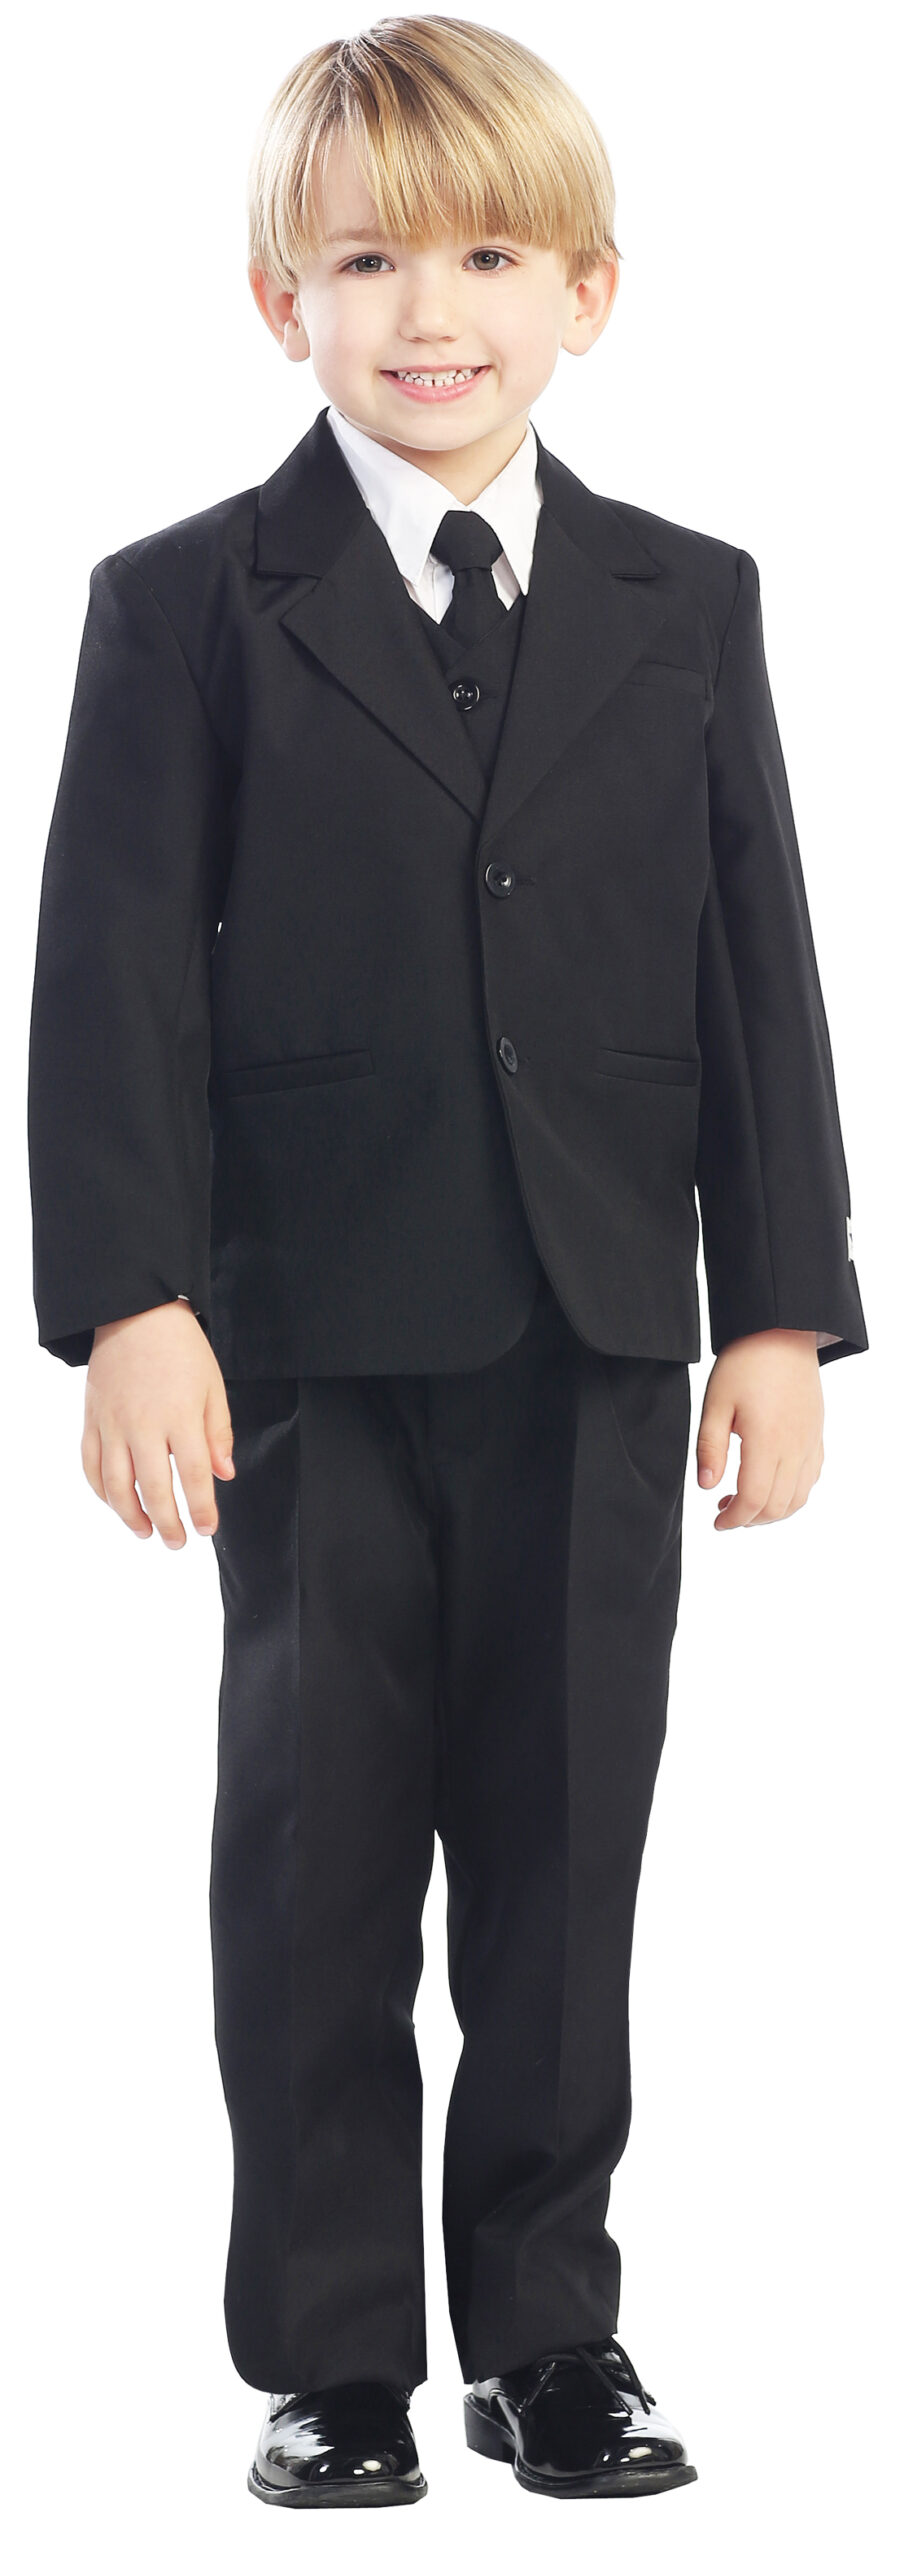 Avery Hill 5-Piece Boy's 2-Button Dress Suit Full-Back Vest - Black Size 4